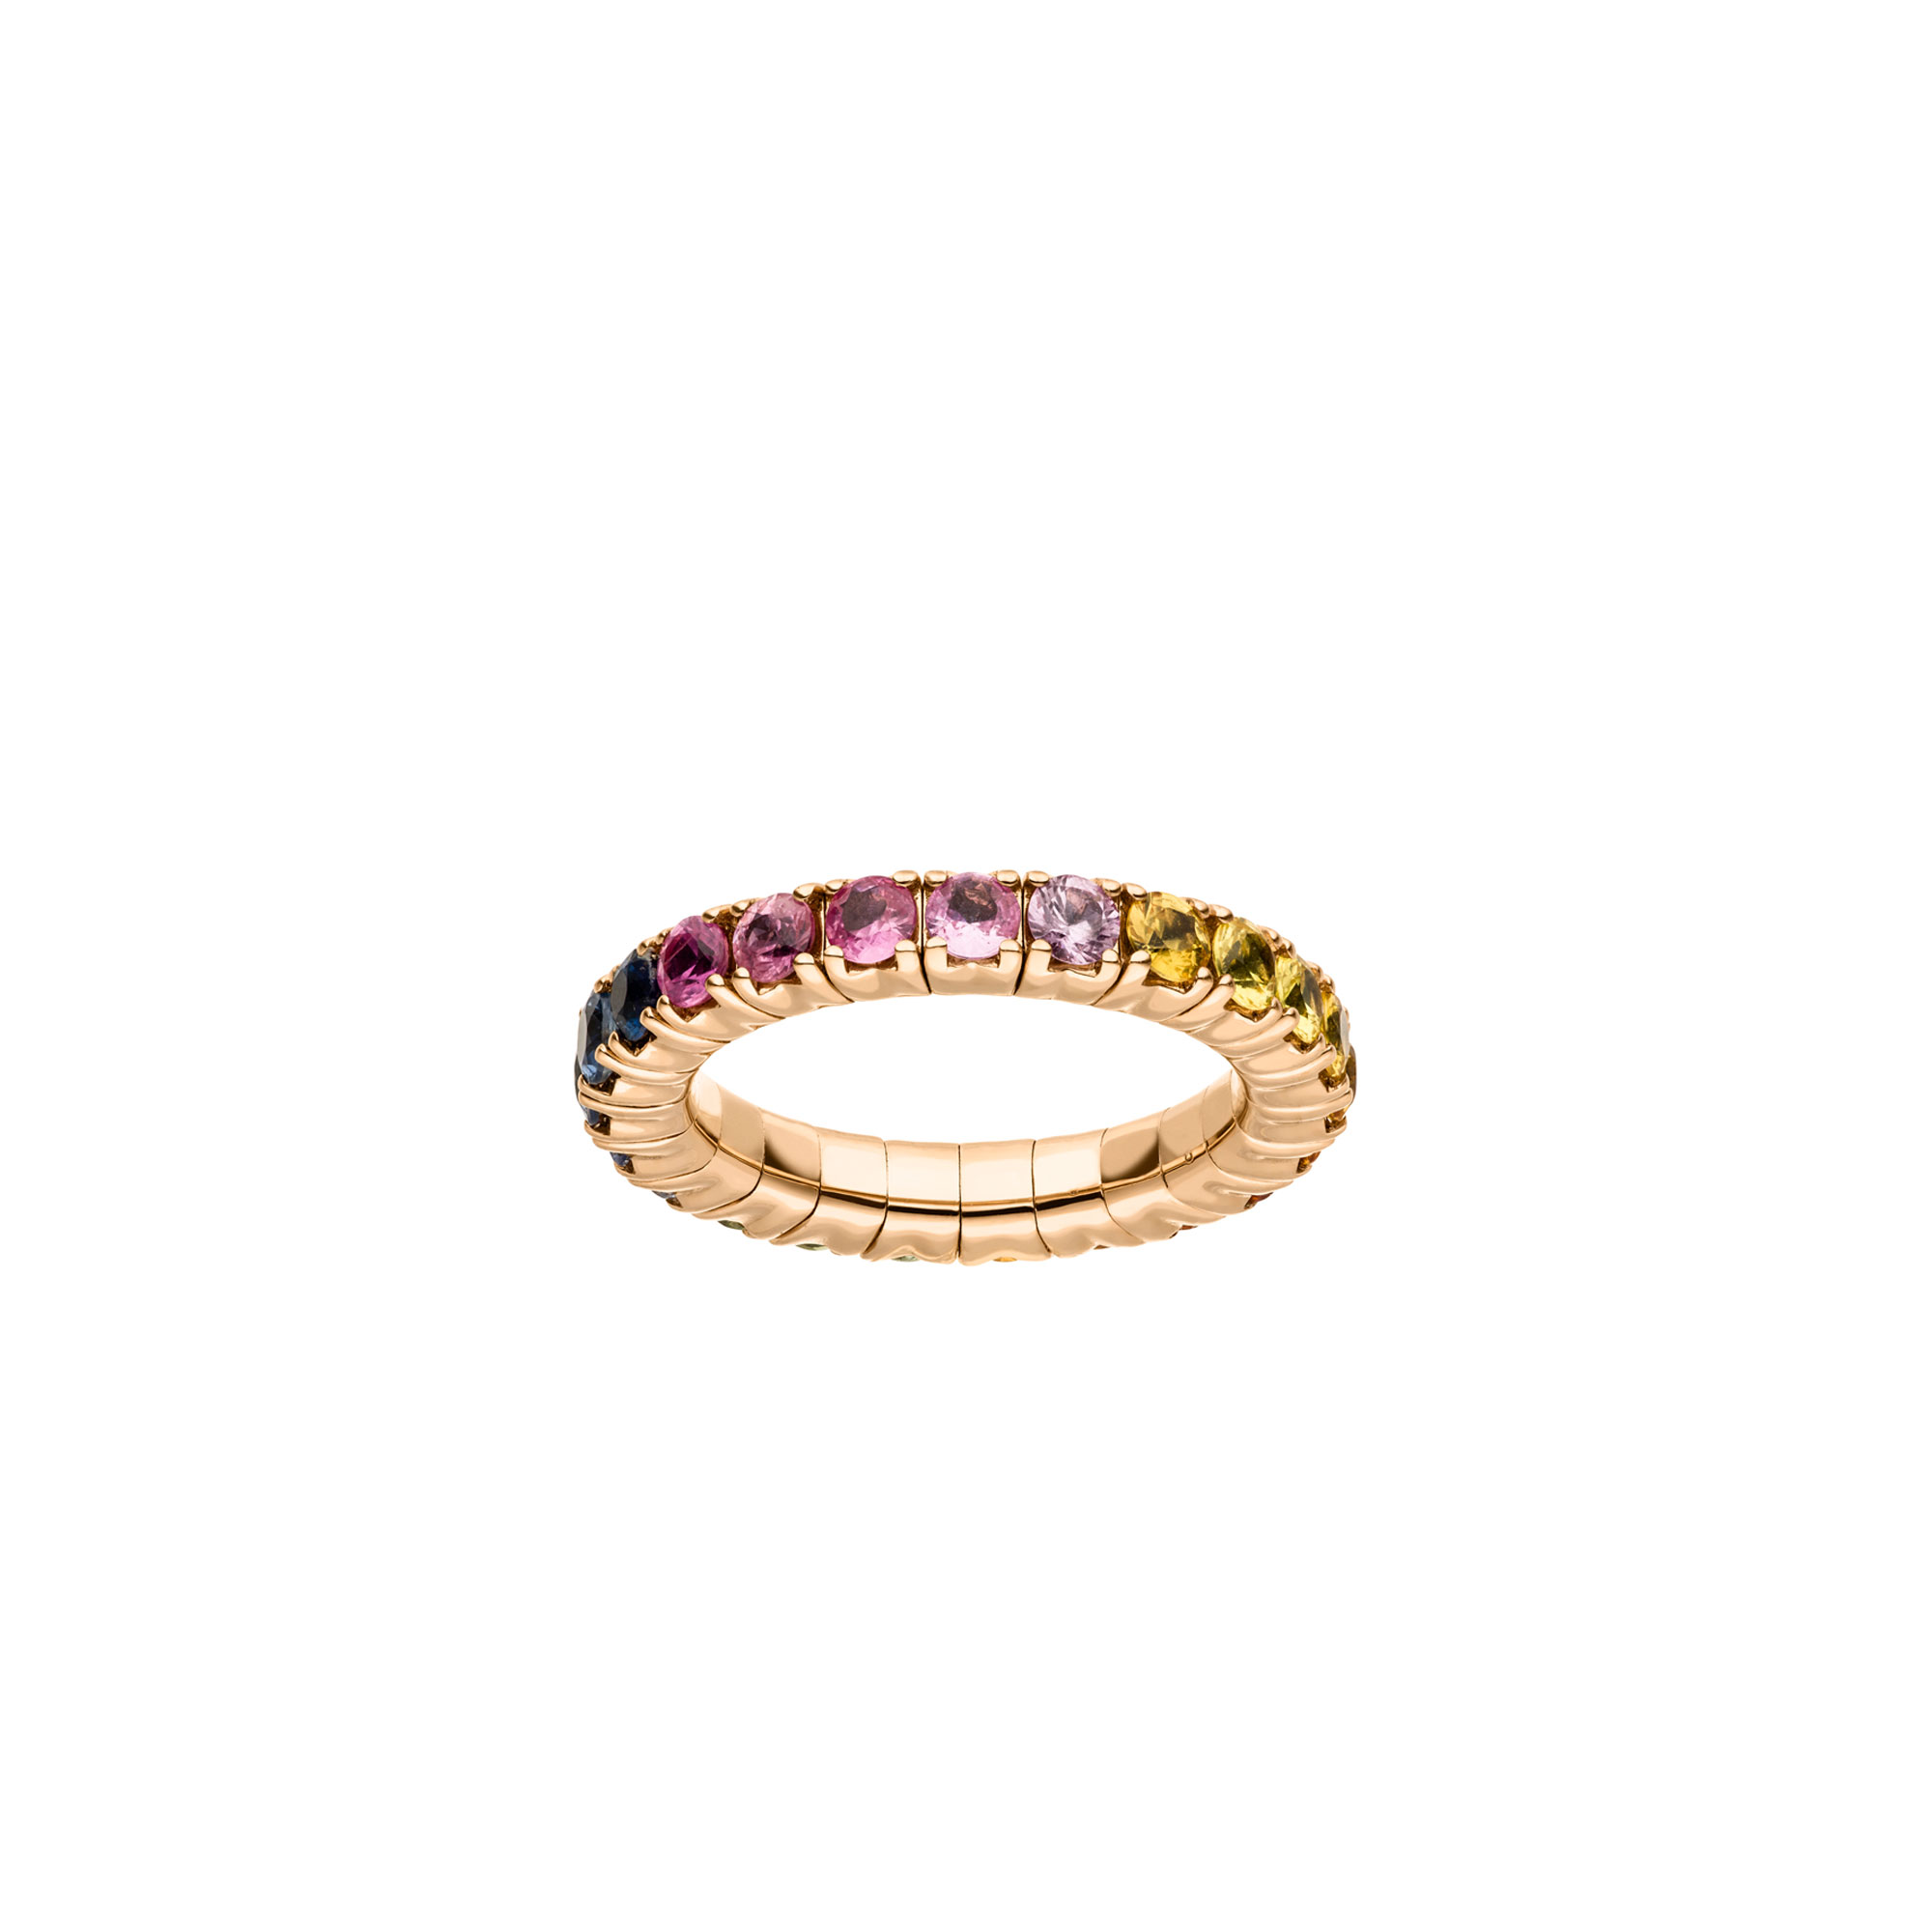 Flexibler Roségold Memoire Ring mit bunten Saphiren von Kollektion Fridrich bei Juwelier Fridrich in München